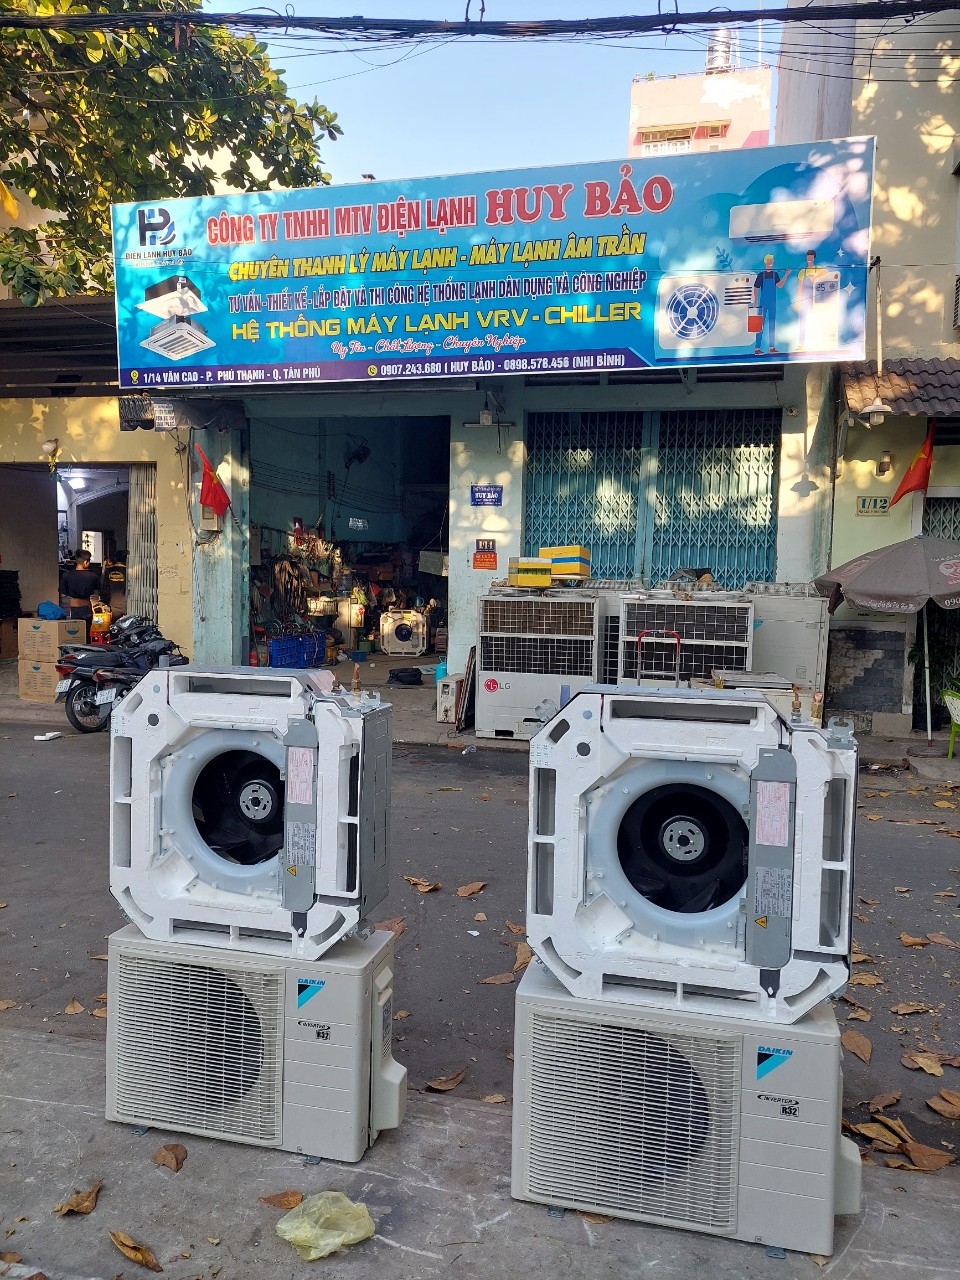 Mua bán máy lạnh cũ chính hãng Gò Vấp✔️ 0907 243 680 Mr.Bảo